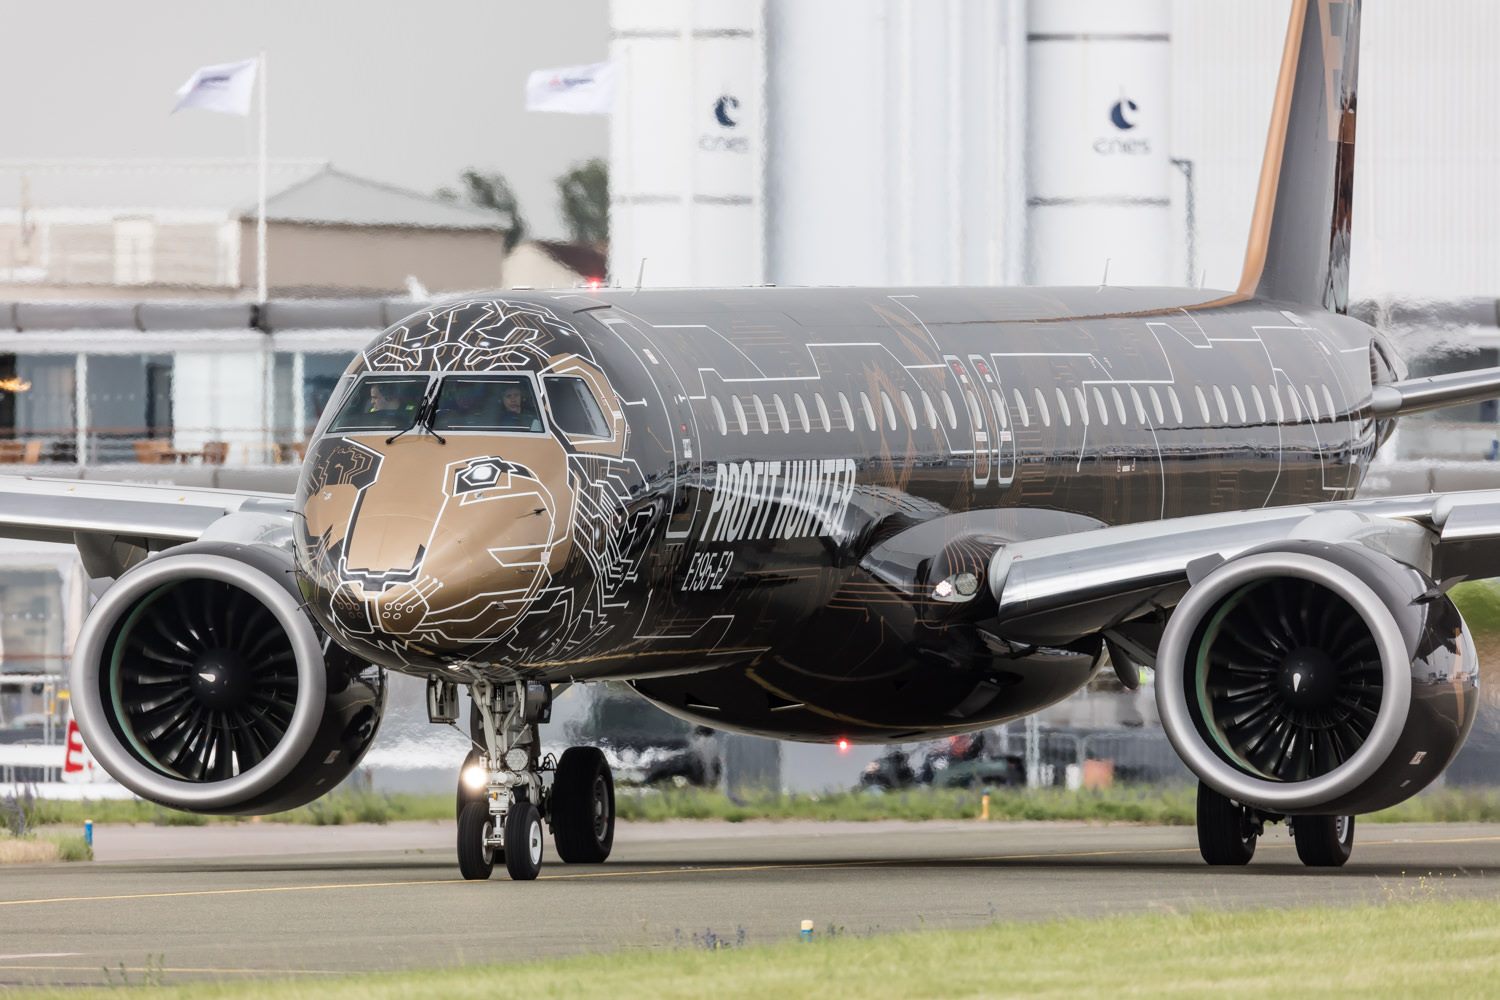 Resultado de imagen para paris air show 2019 Embraer E190